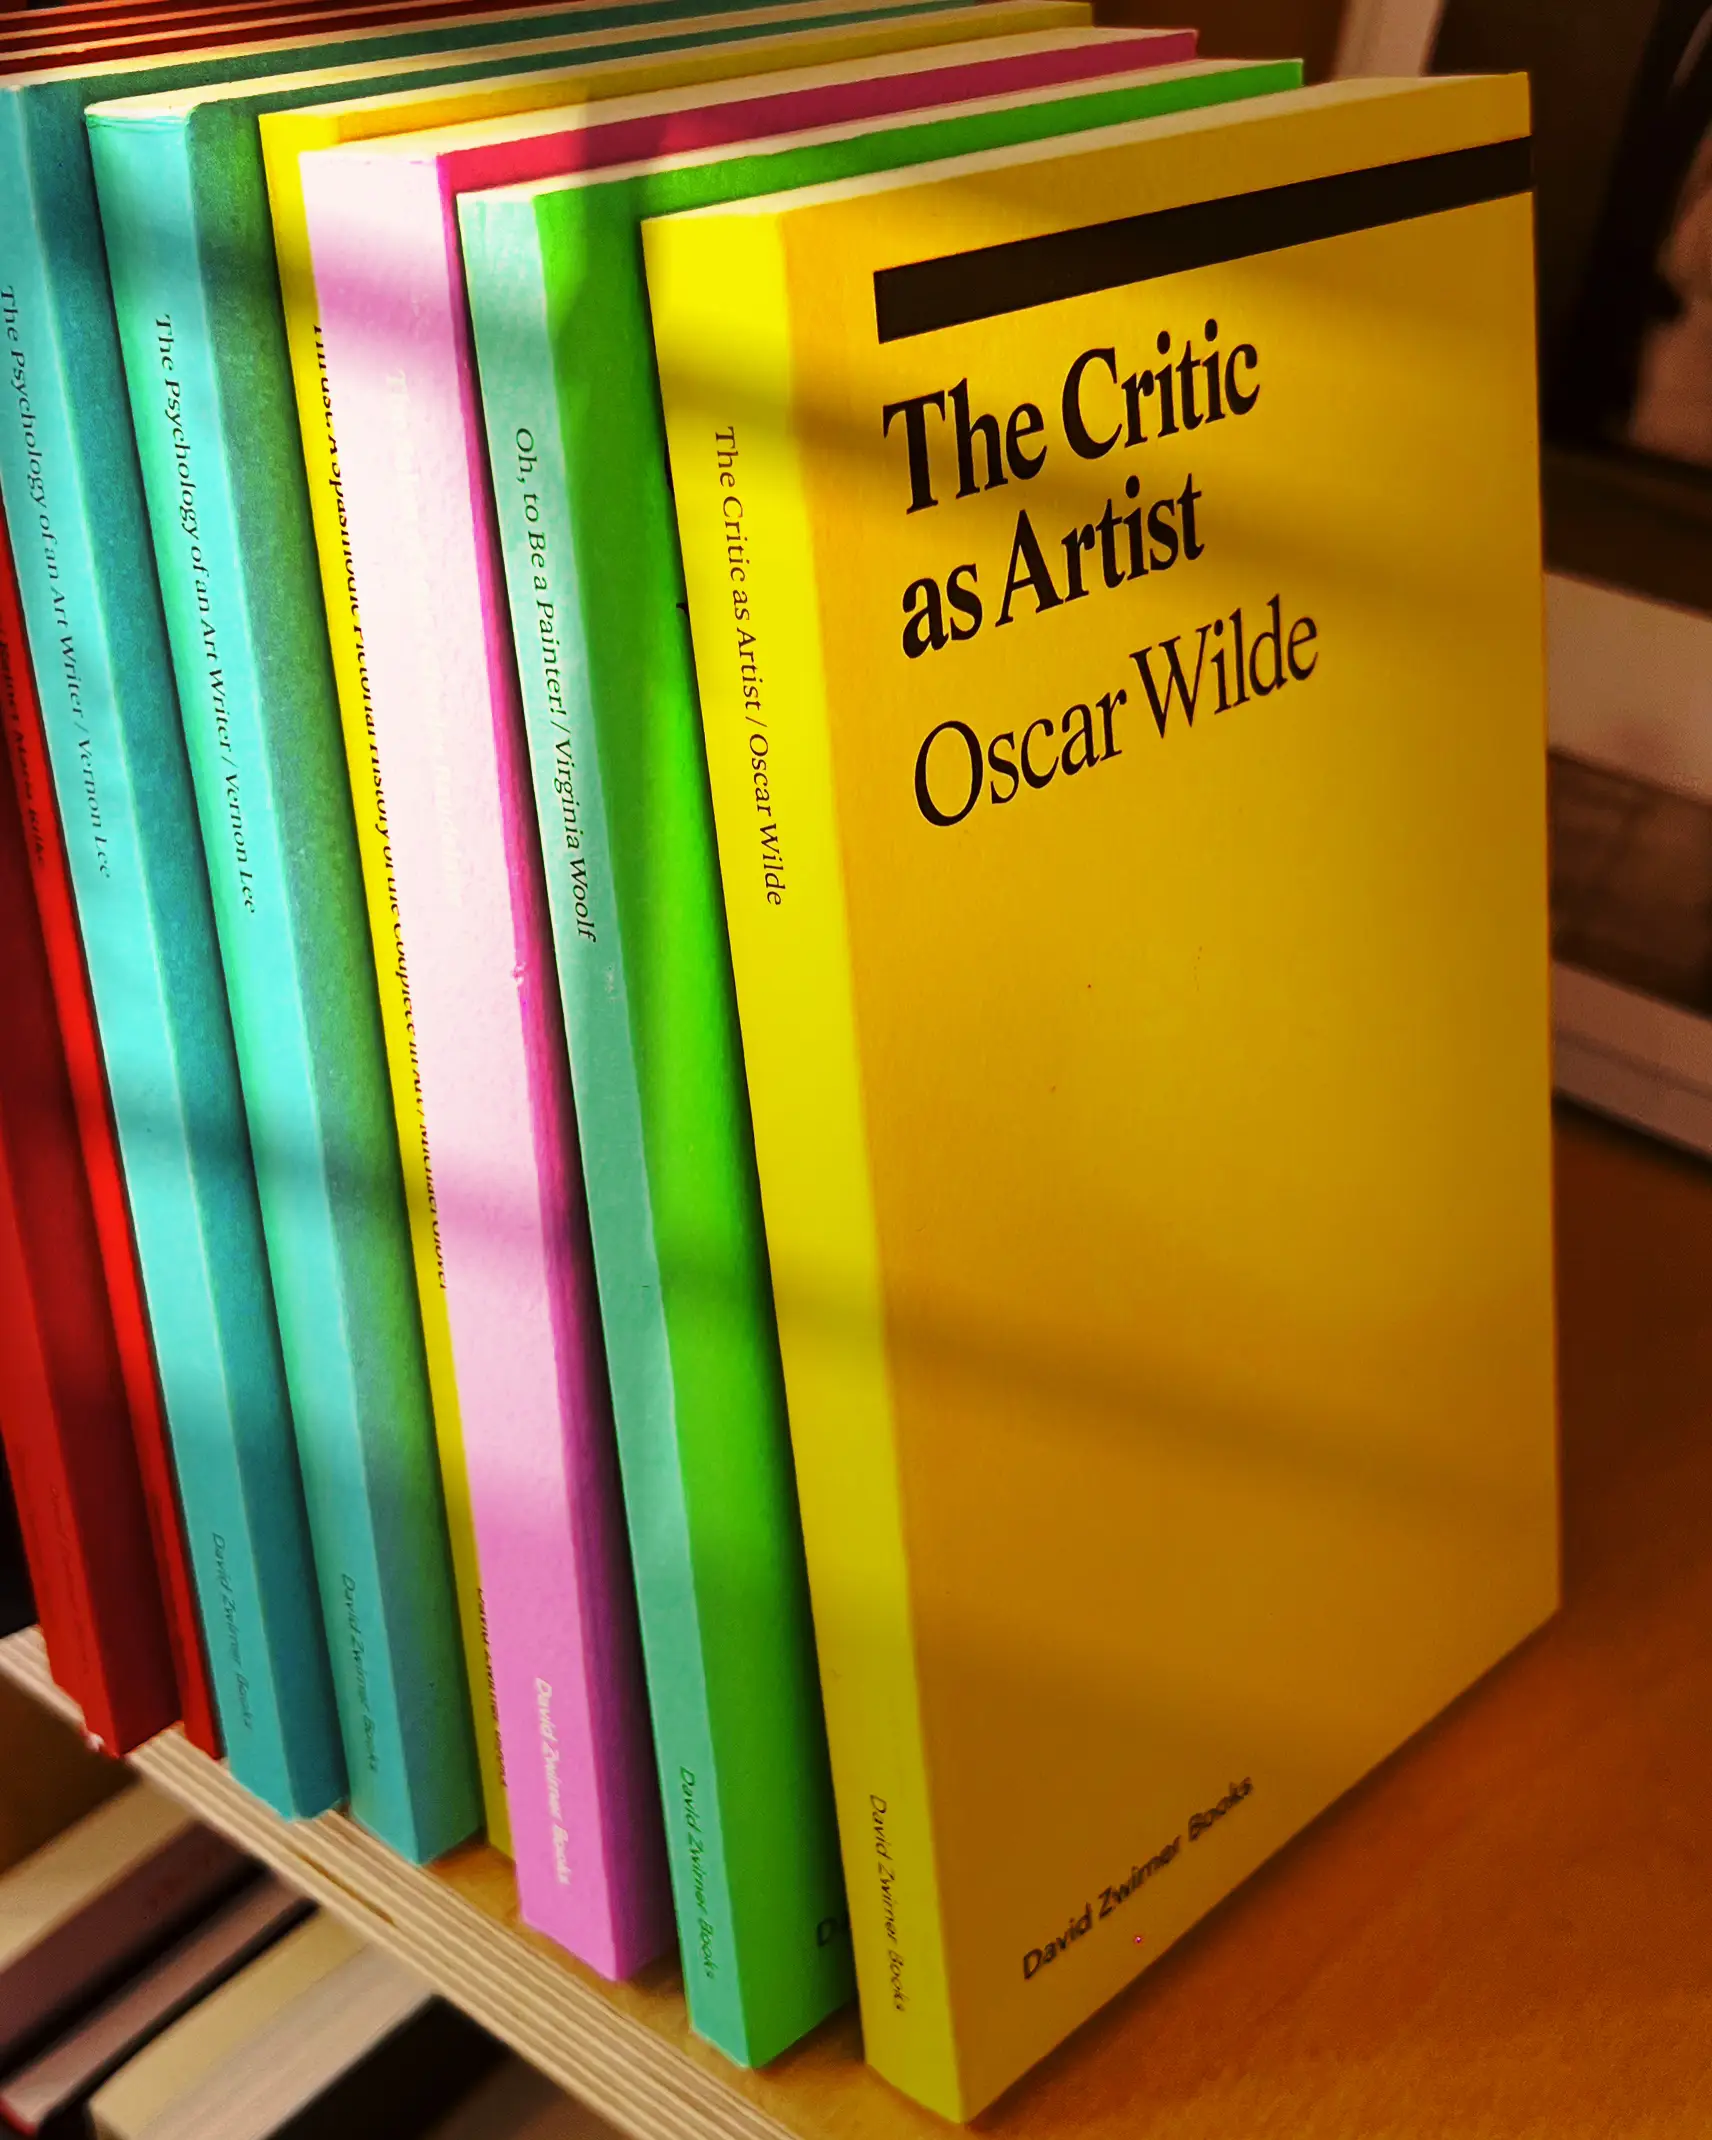 Oscar Wilde Biography - Lemon8 Search